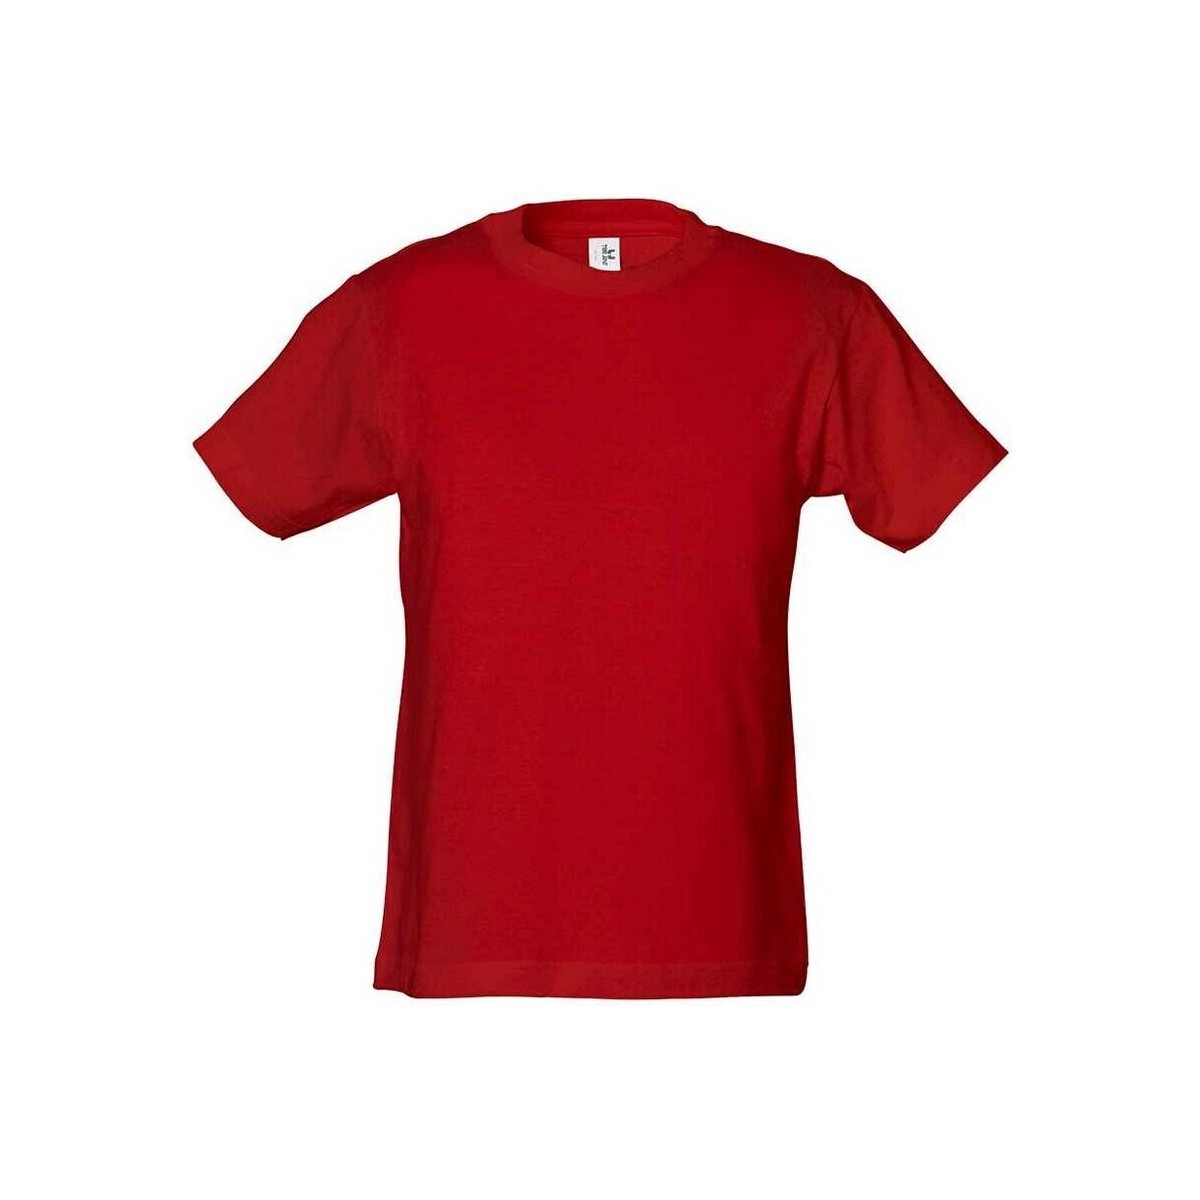 textil Niños Camisetas manga larga Tee Jays Power Rojo